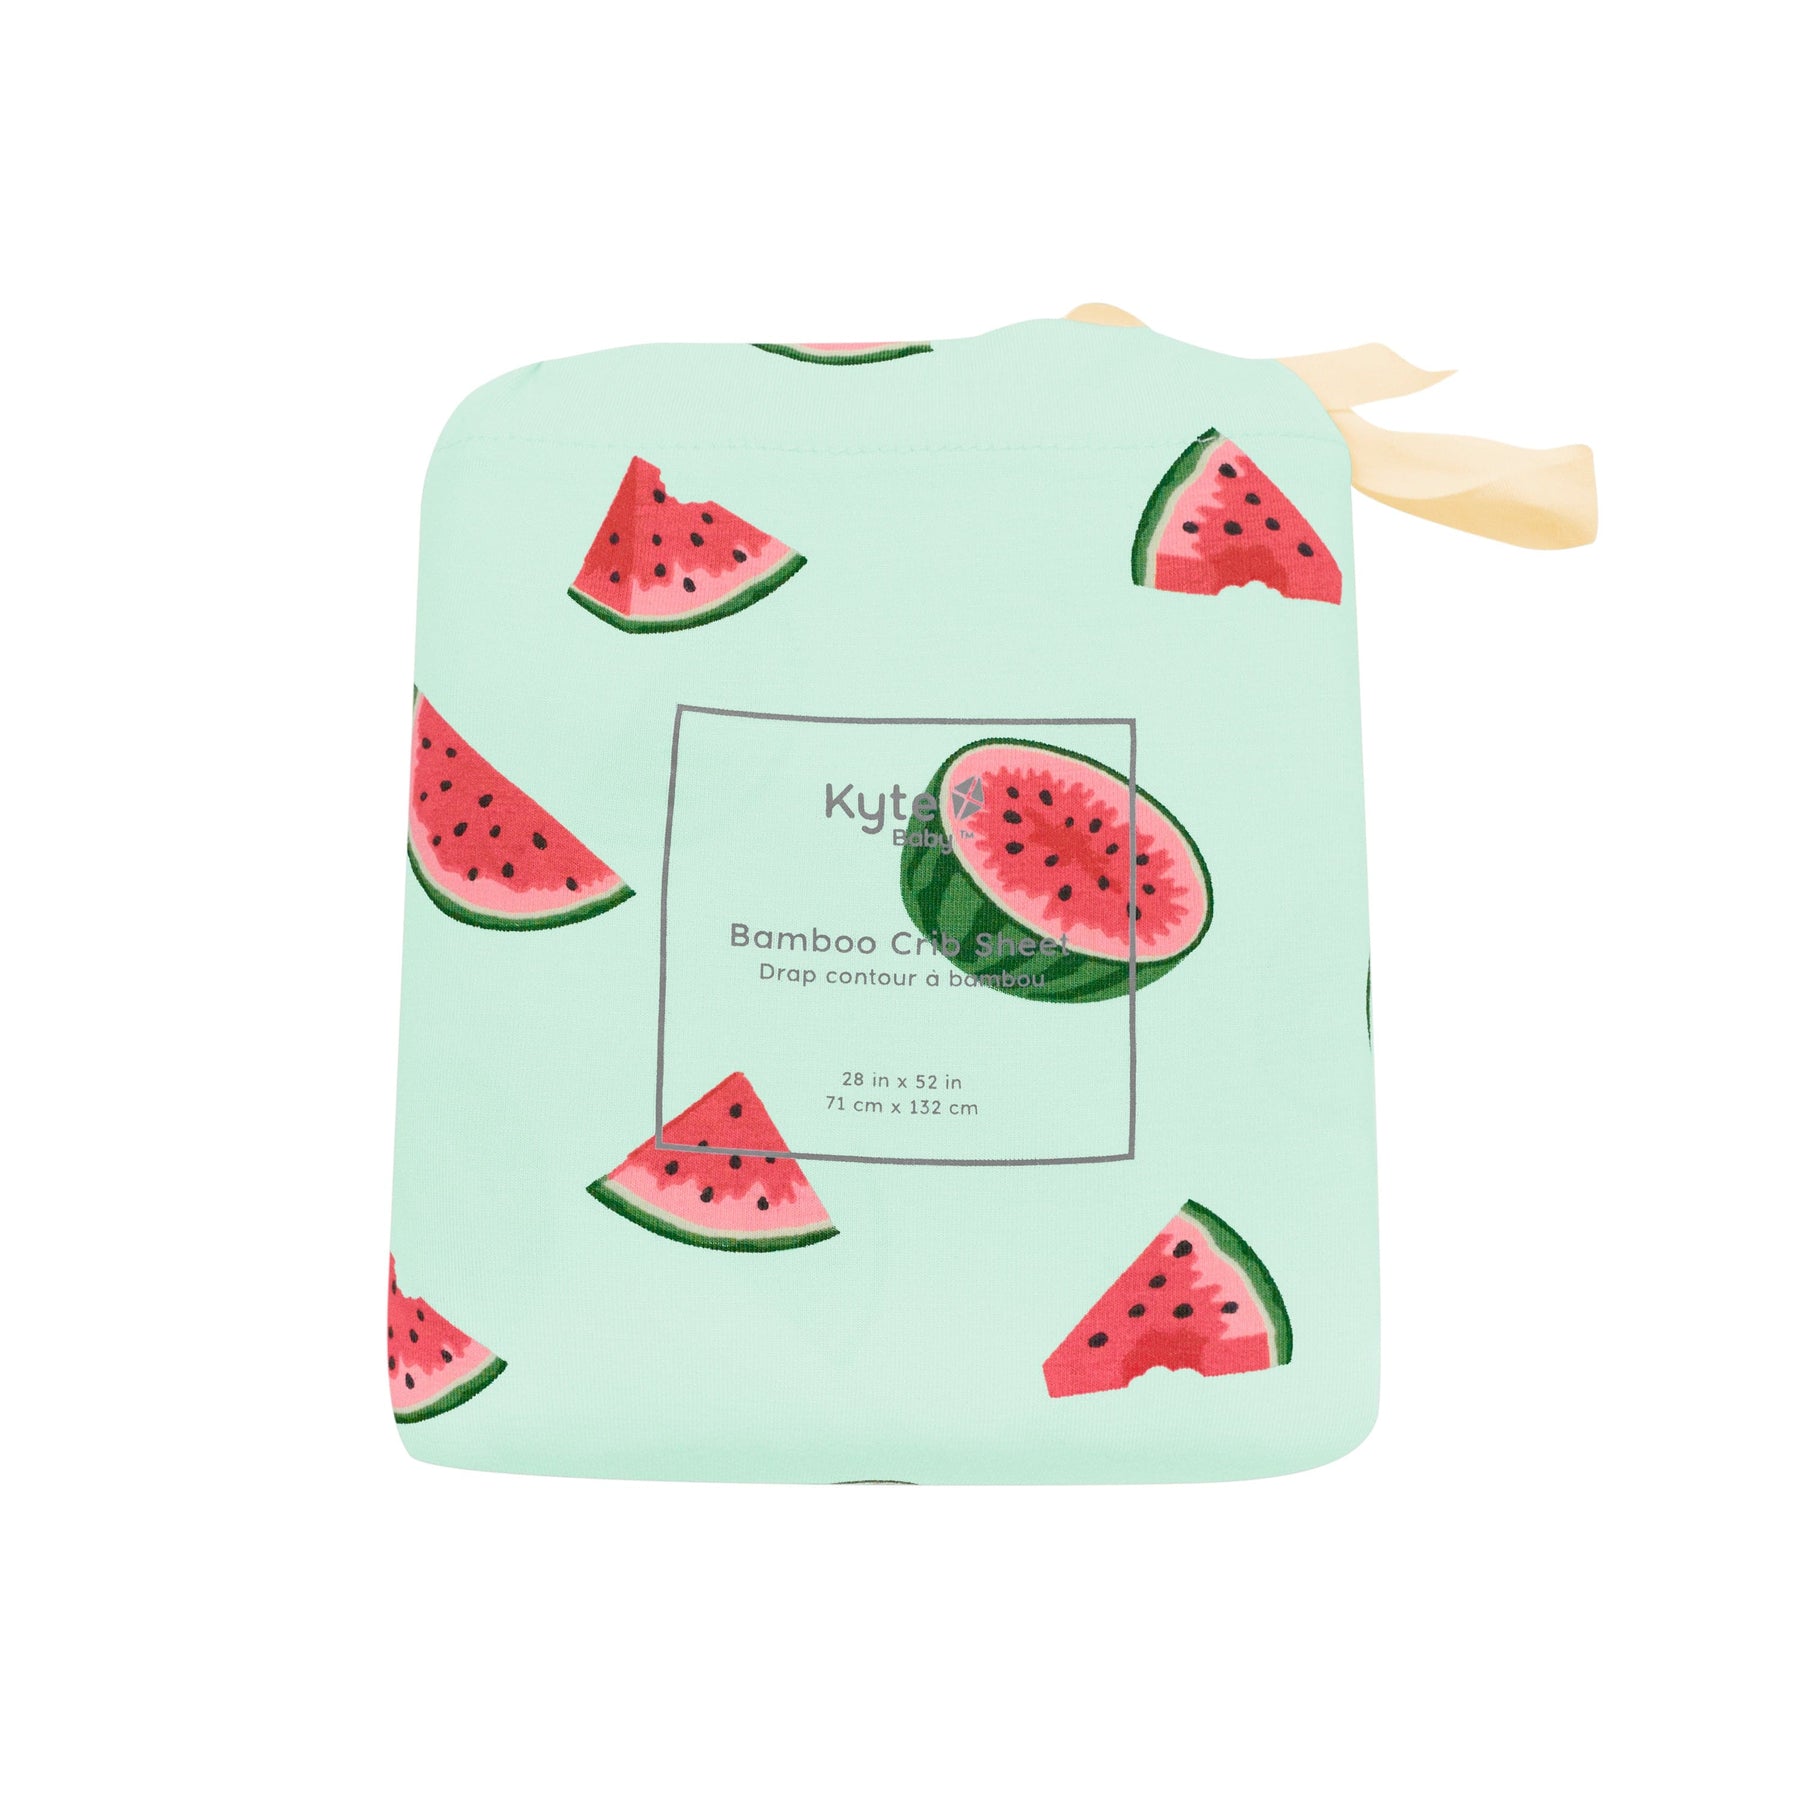 Kyte Baby Crib Sheet Watermelon / Crib Sheet Crib Sheet in Watermelon